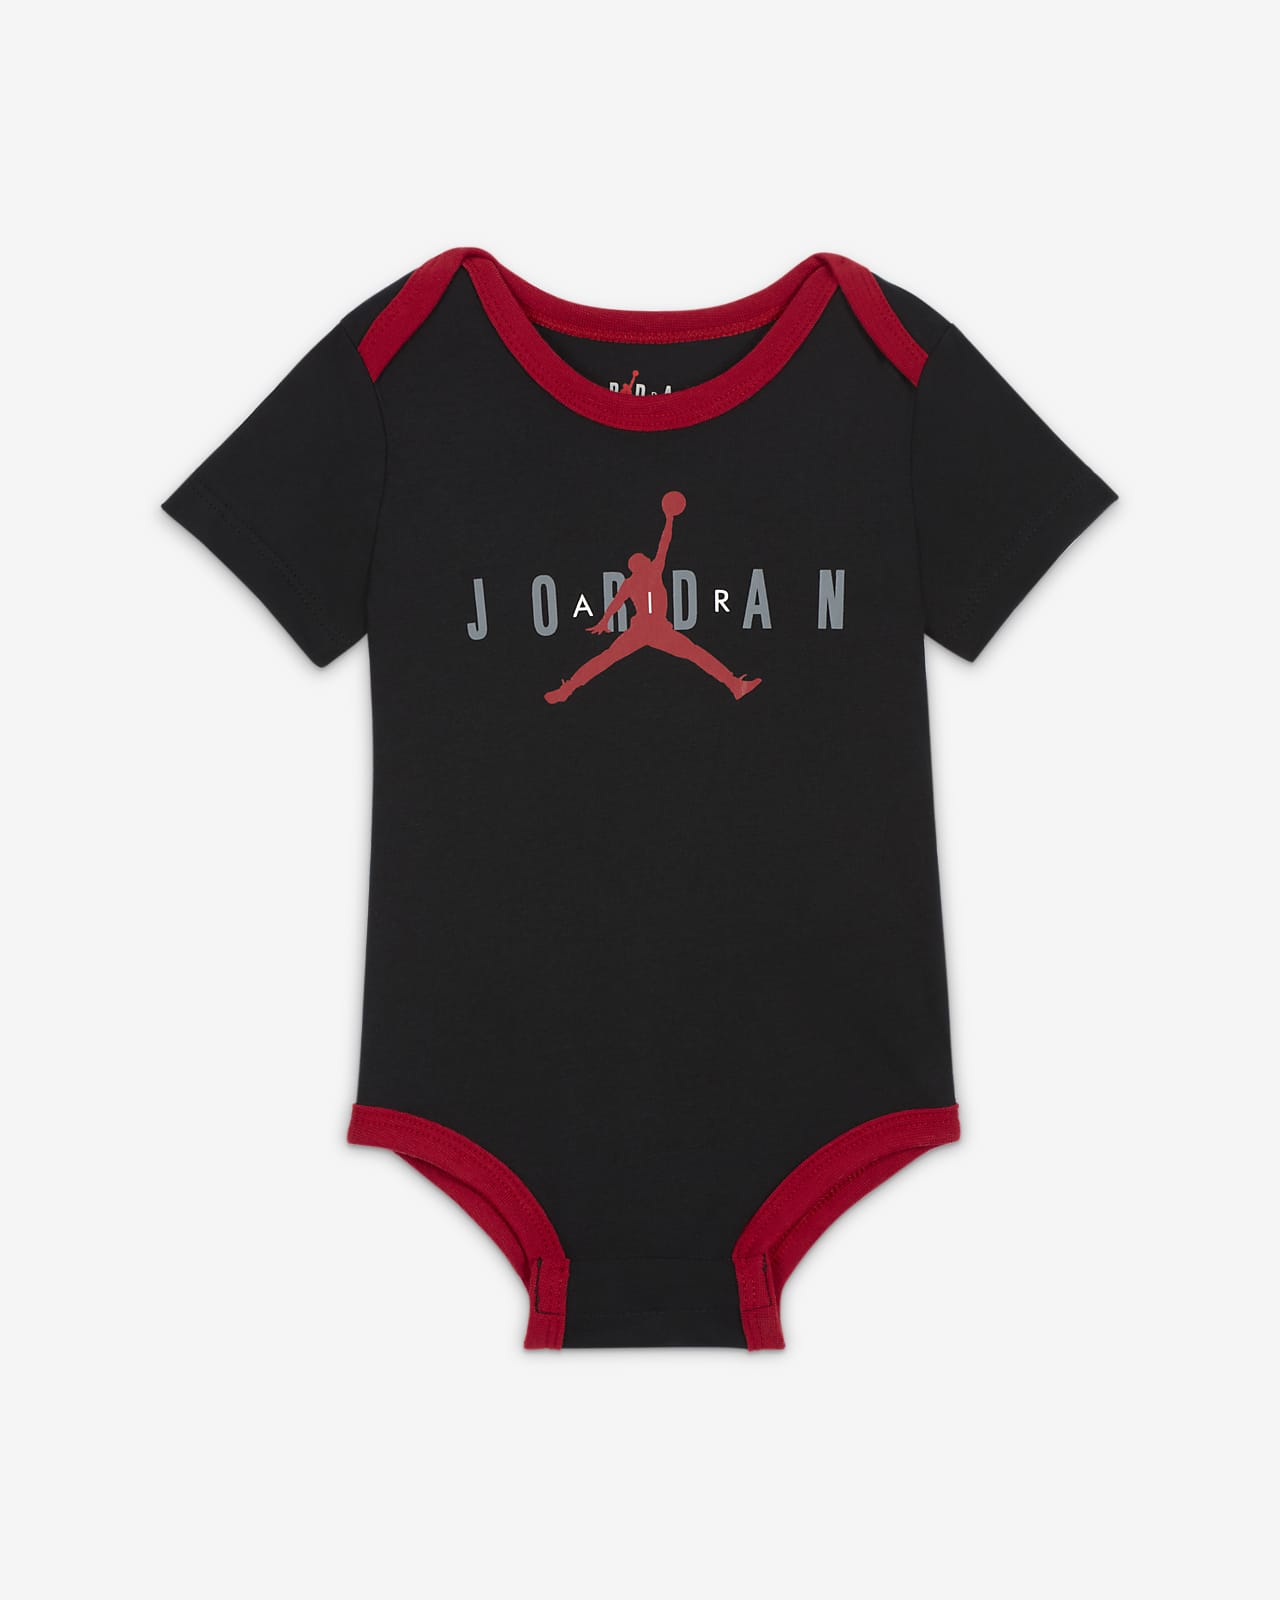 Jordan Baby (0-9M) Bodysuits (3-Pack). Nike.com